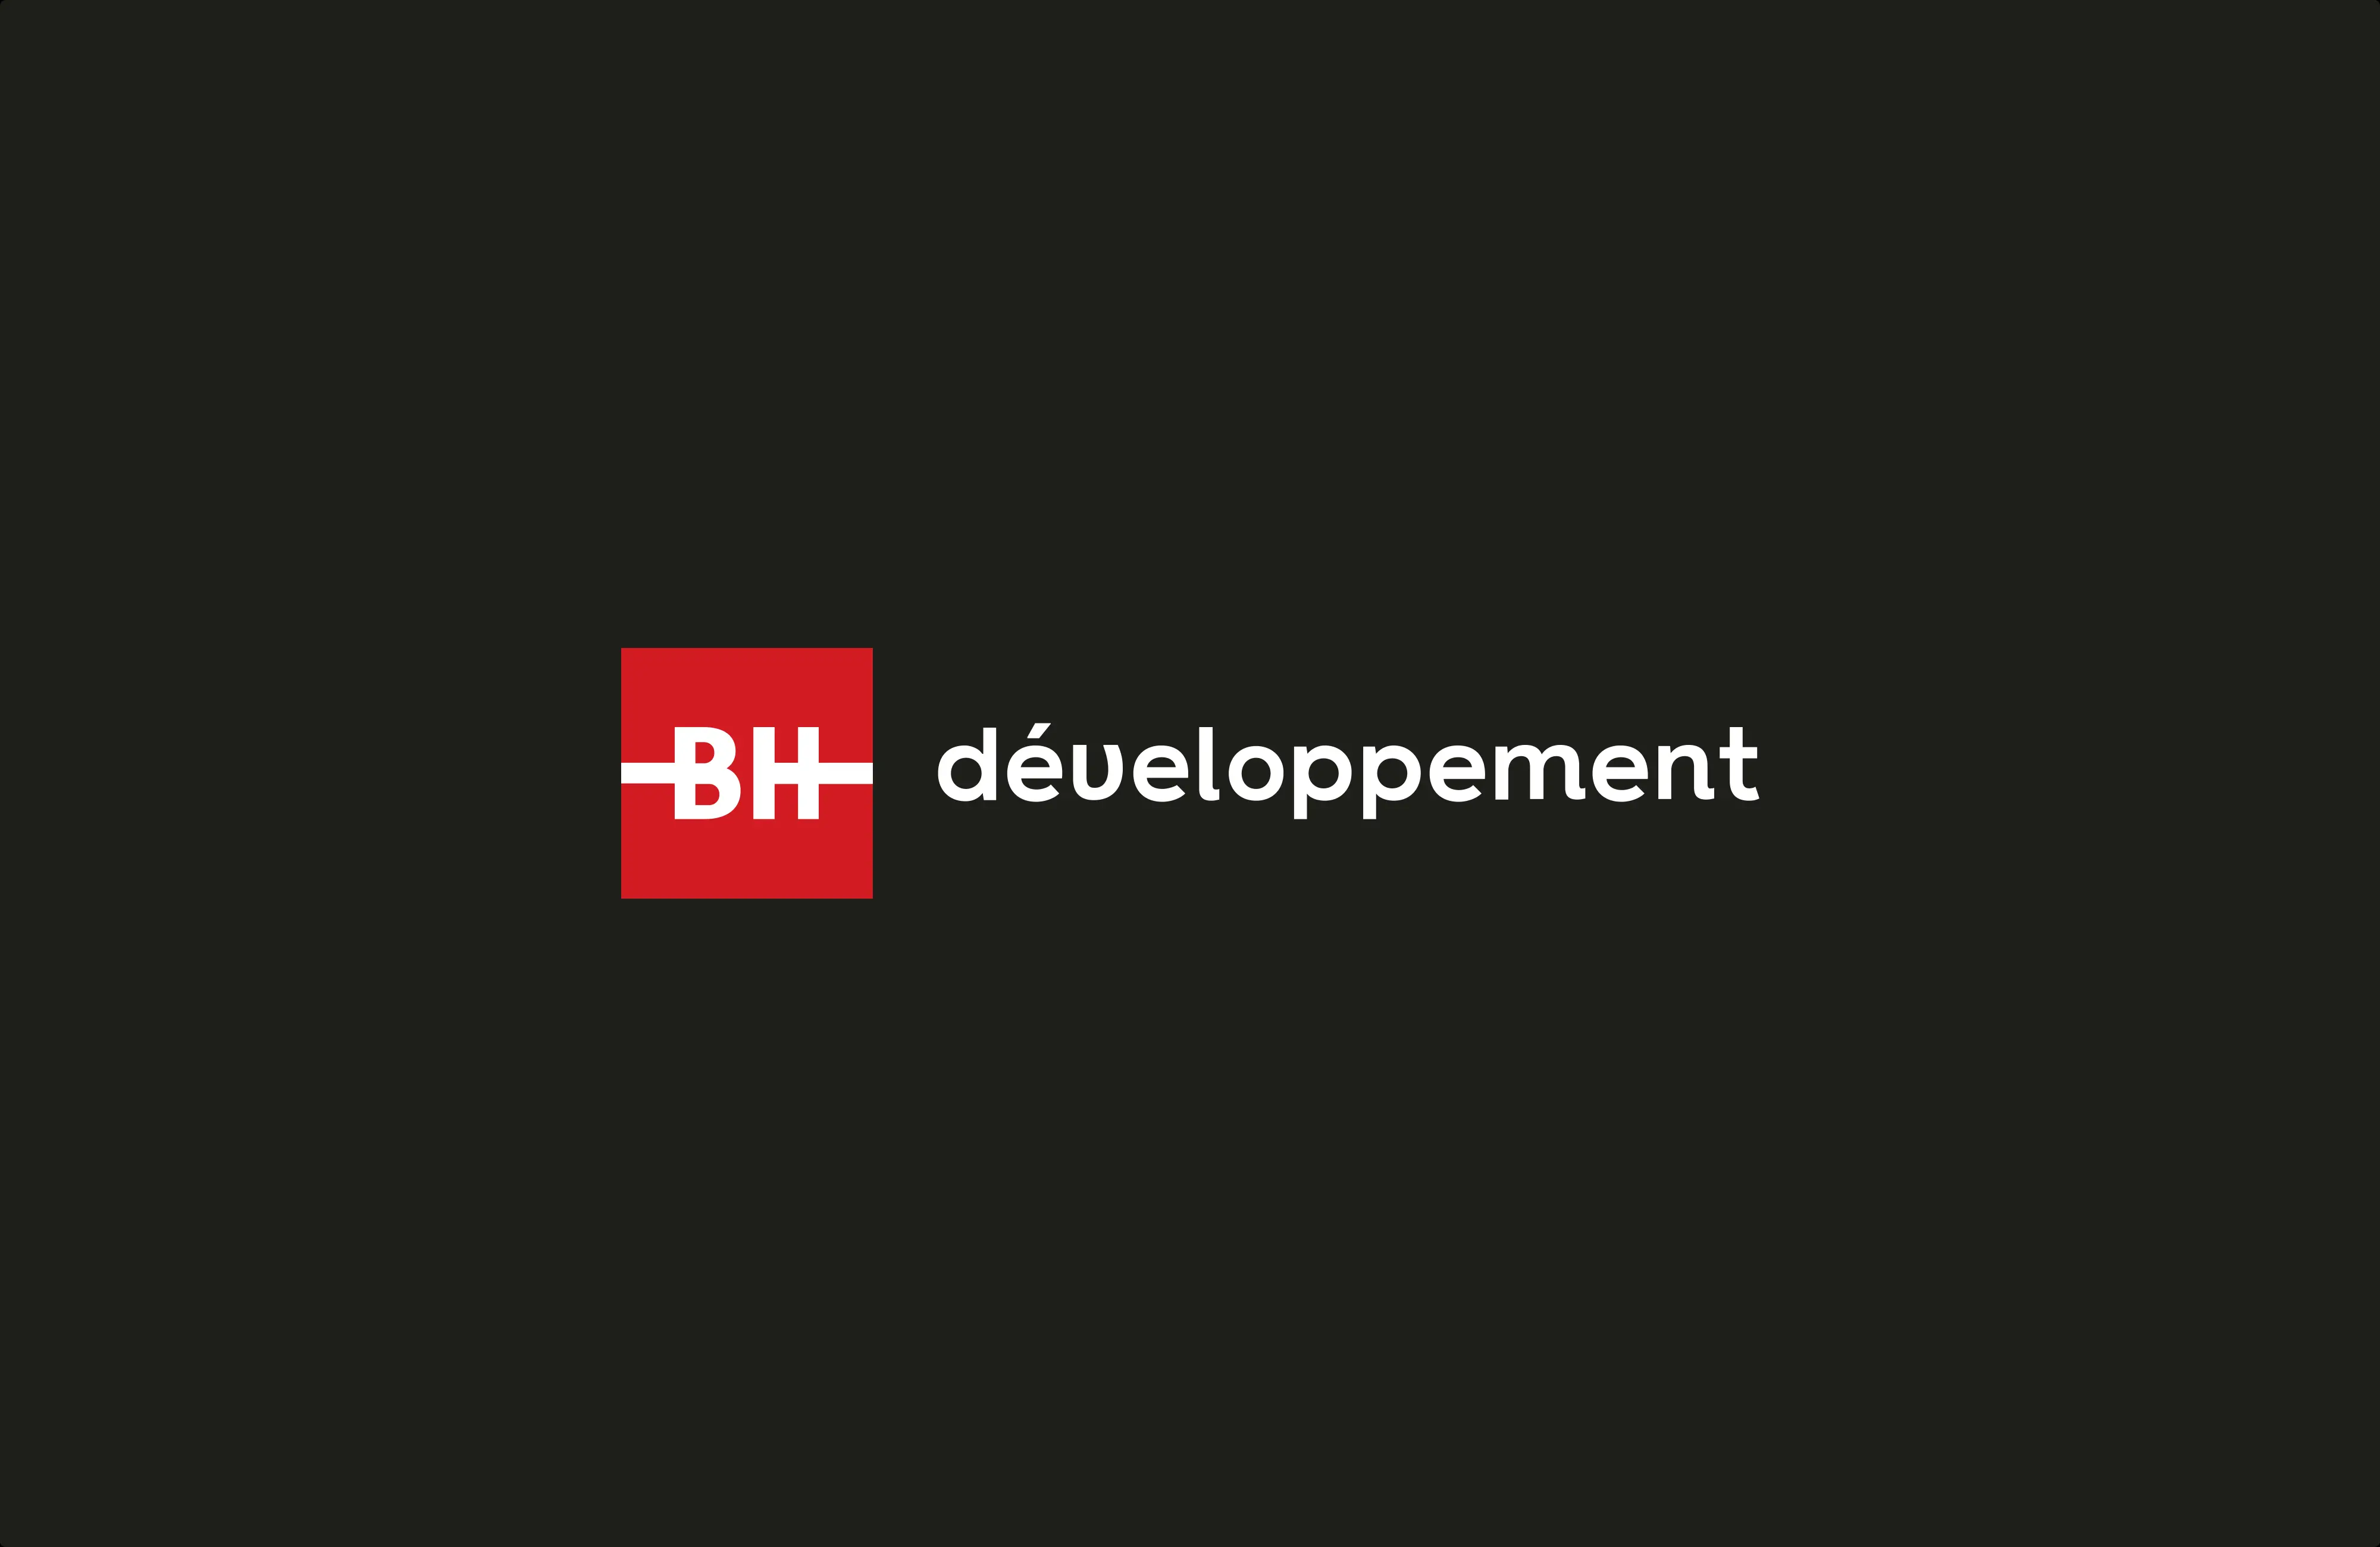 Logo BH développement sur fond foncé